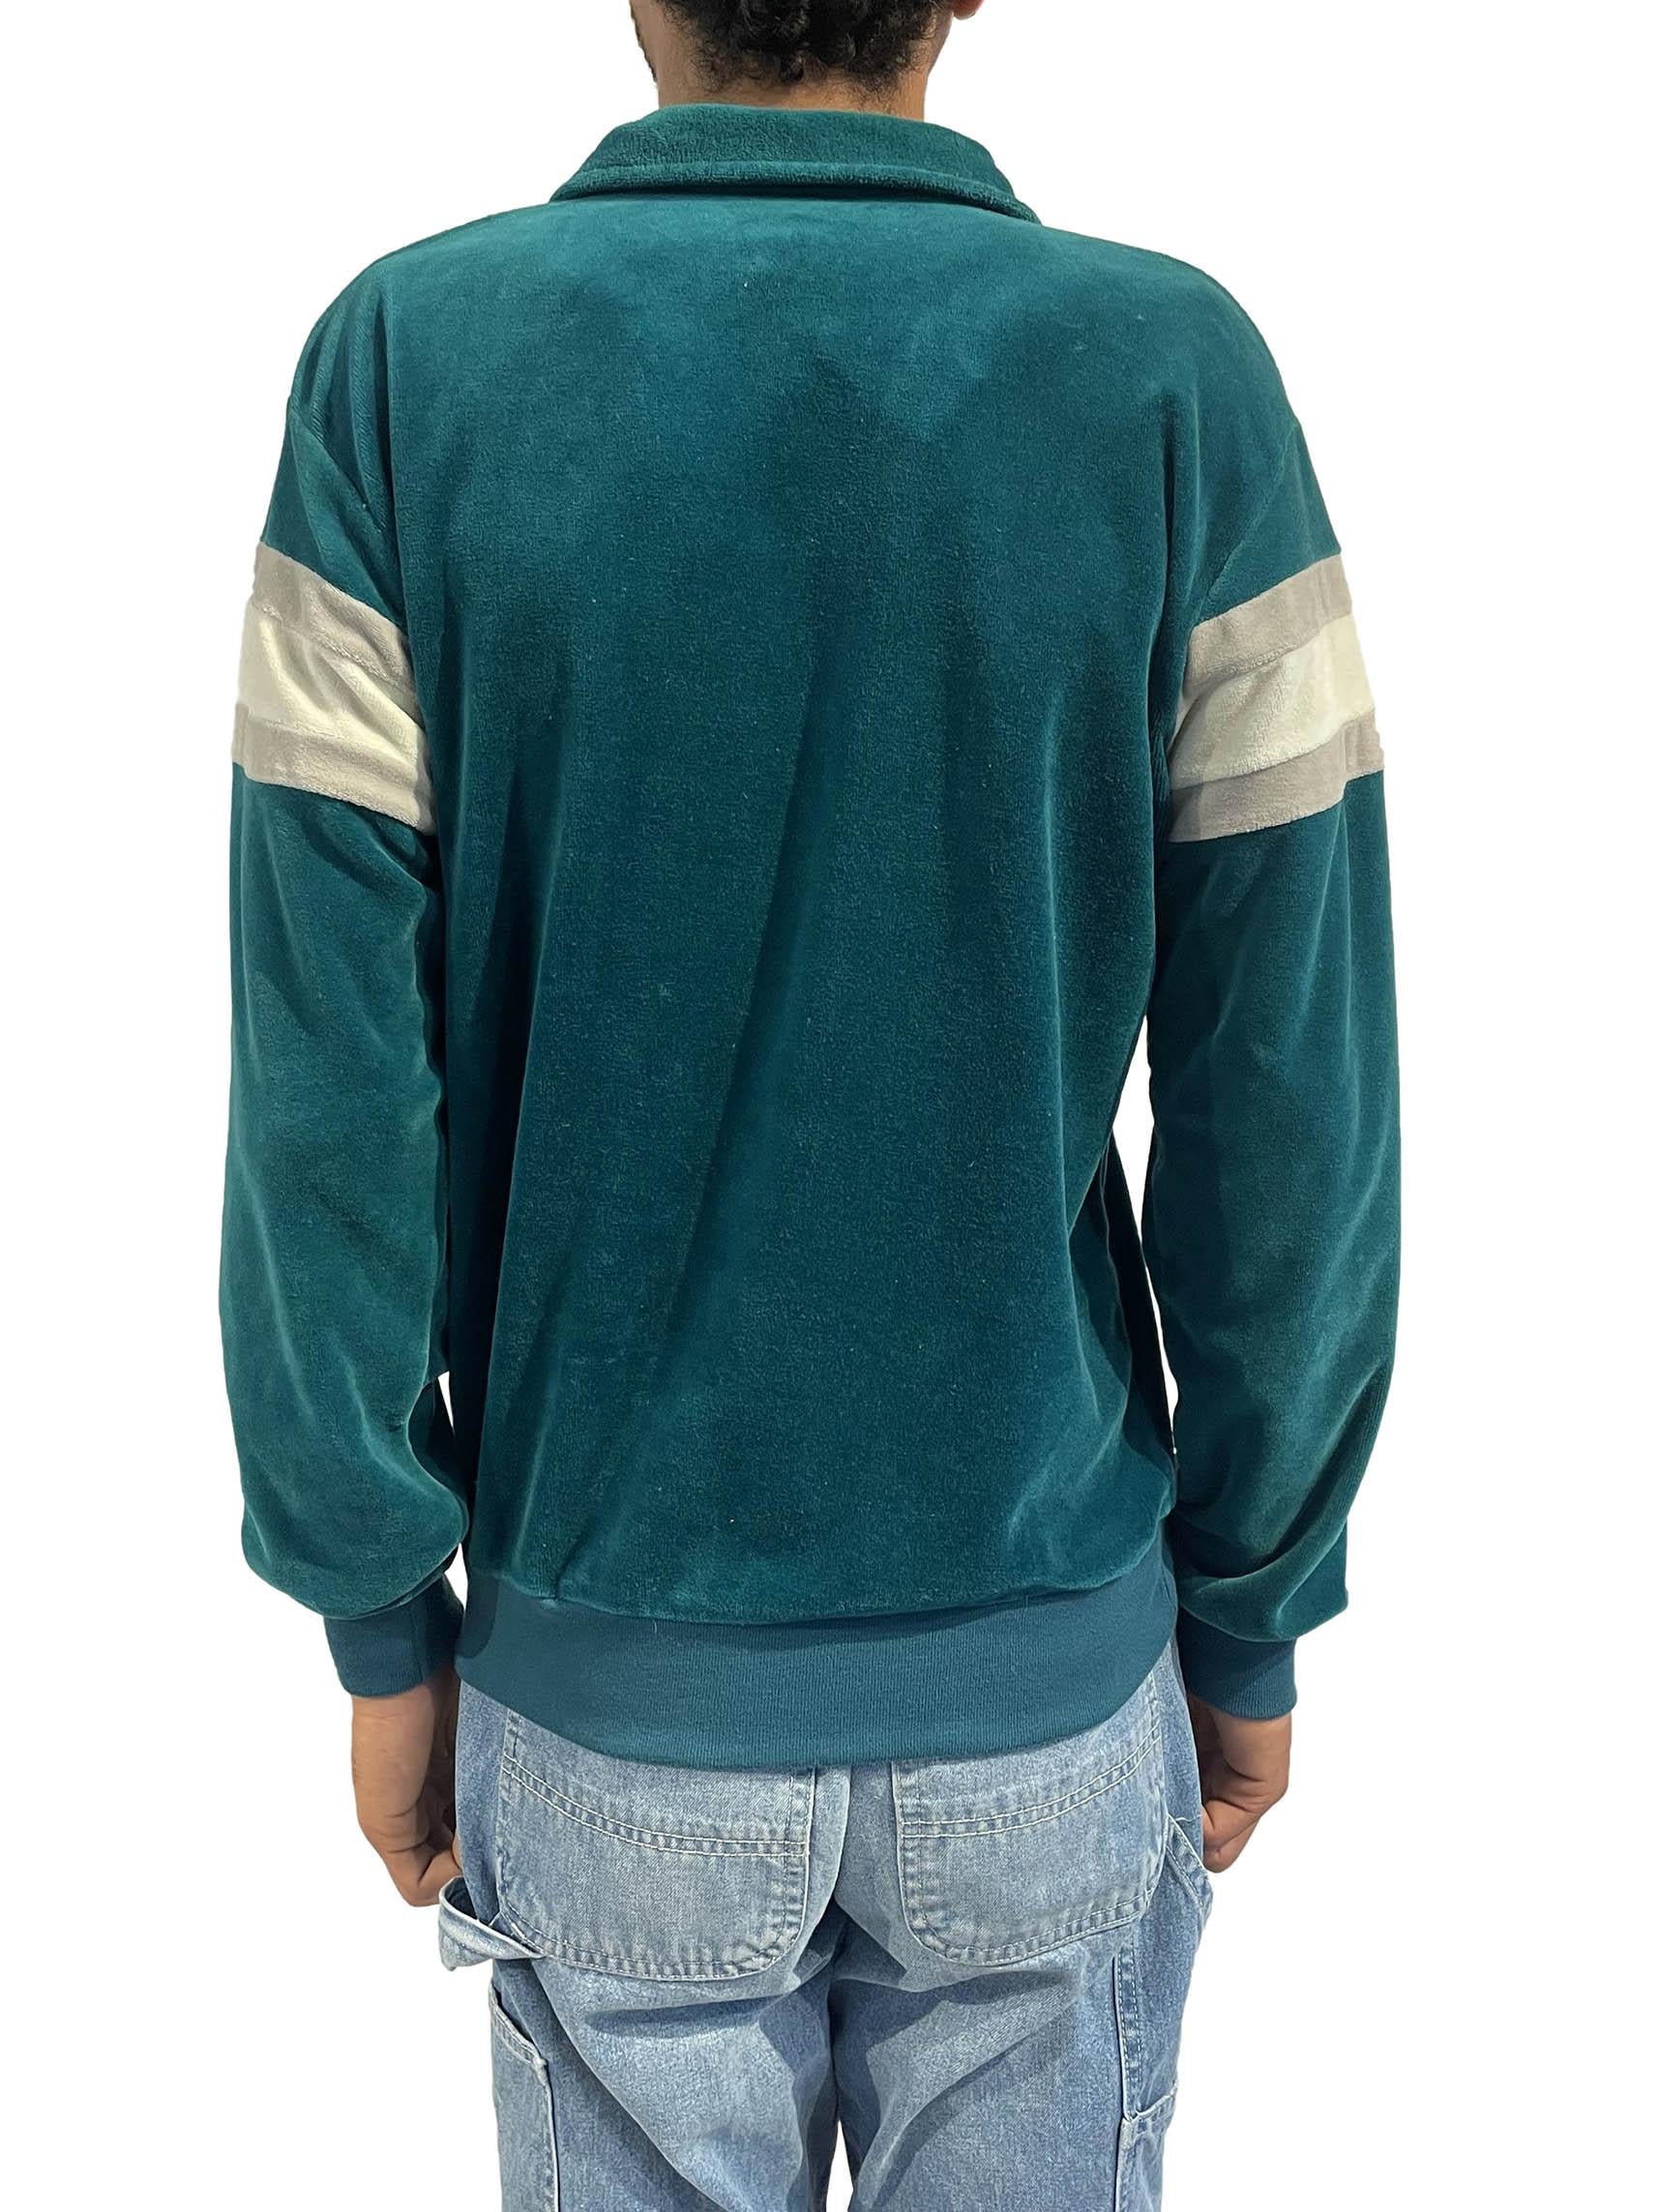 1980er Pullover-Shirt aus Polyester/Baumwolle mit blau-weiß gestreiften Streifen 2